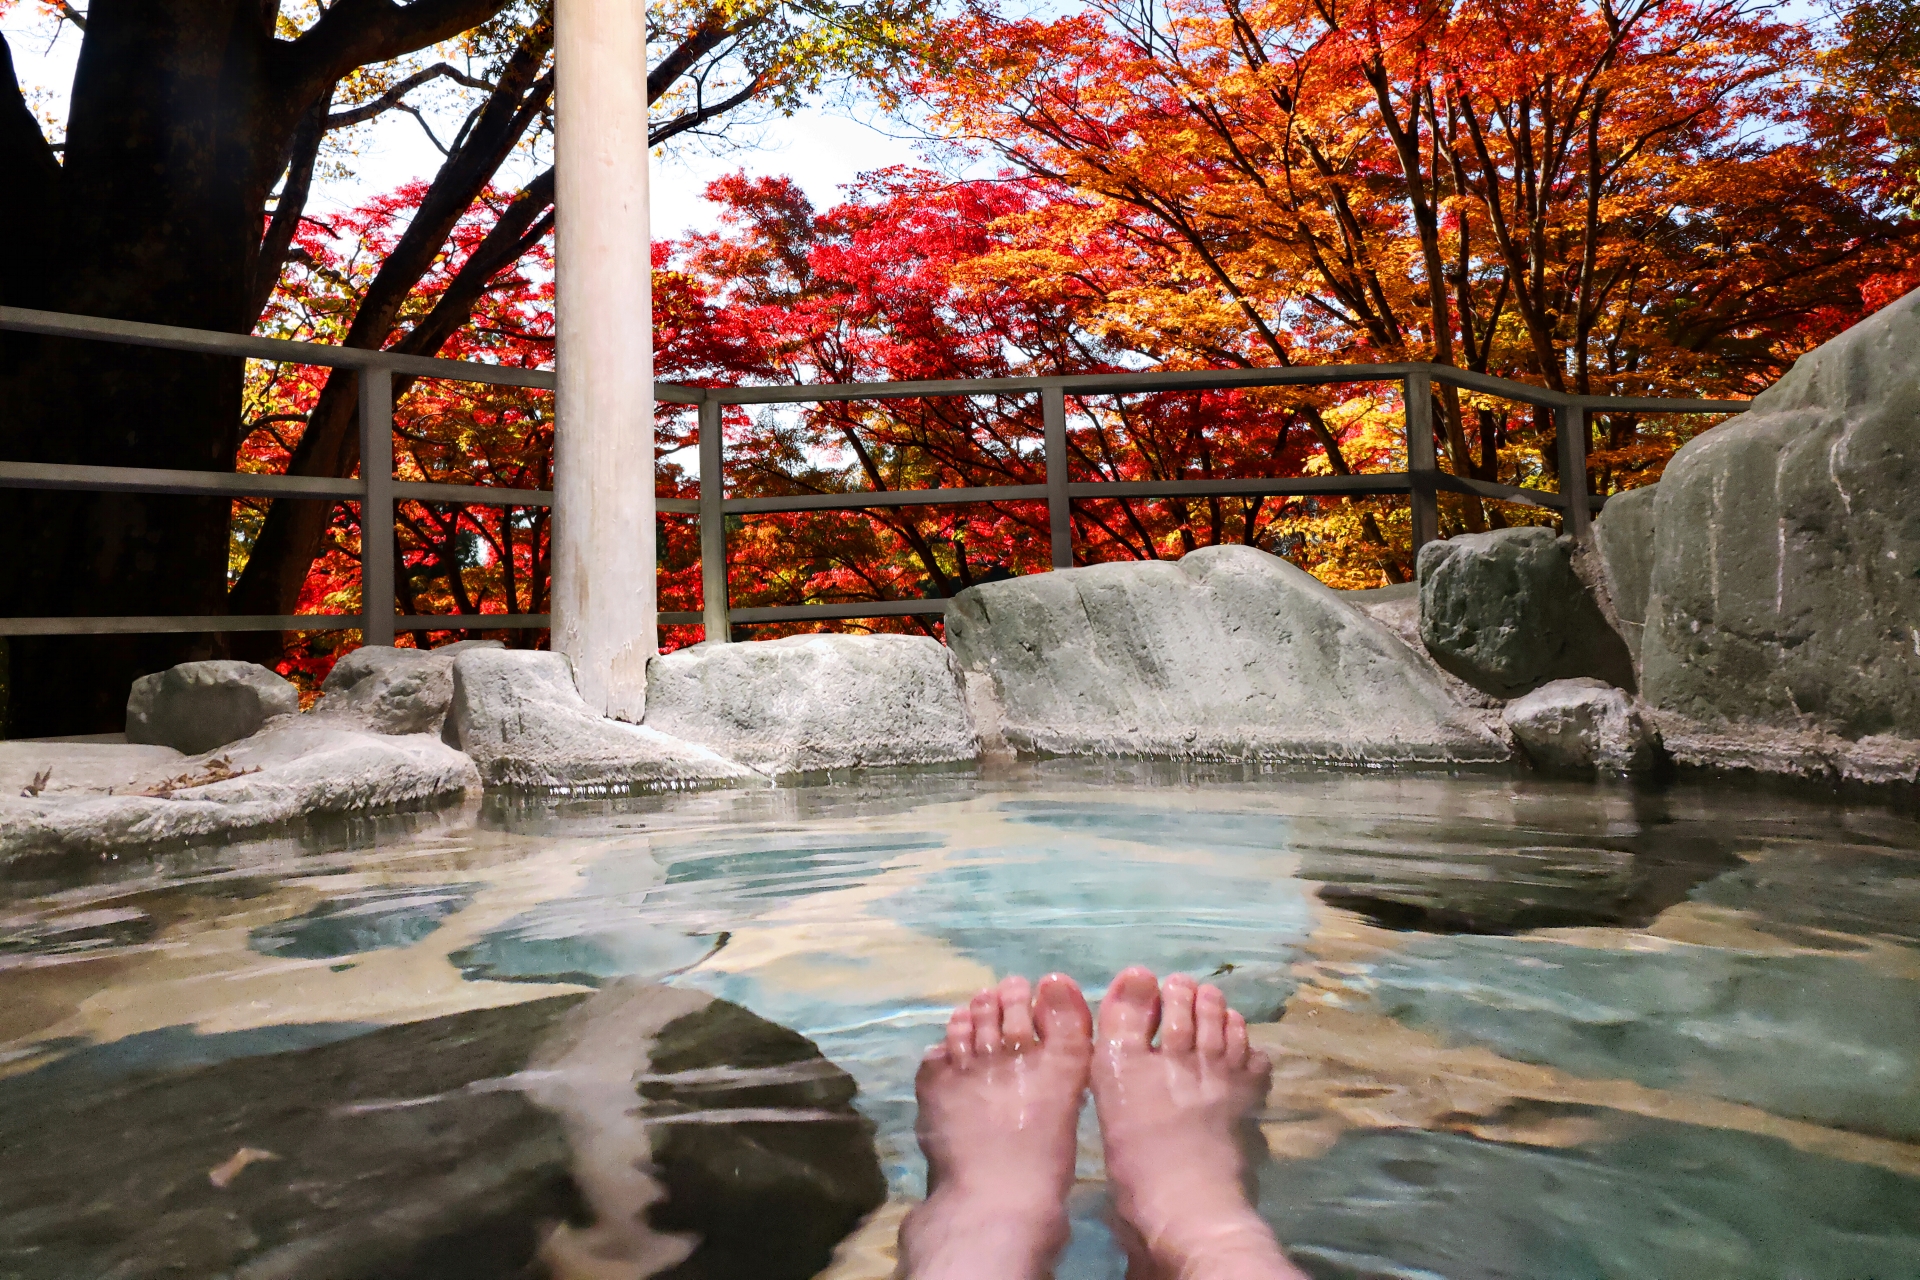 Relaxing in an Onsen